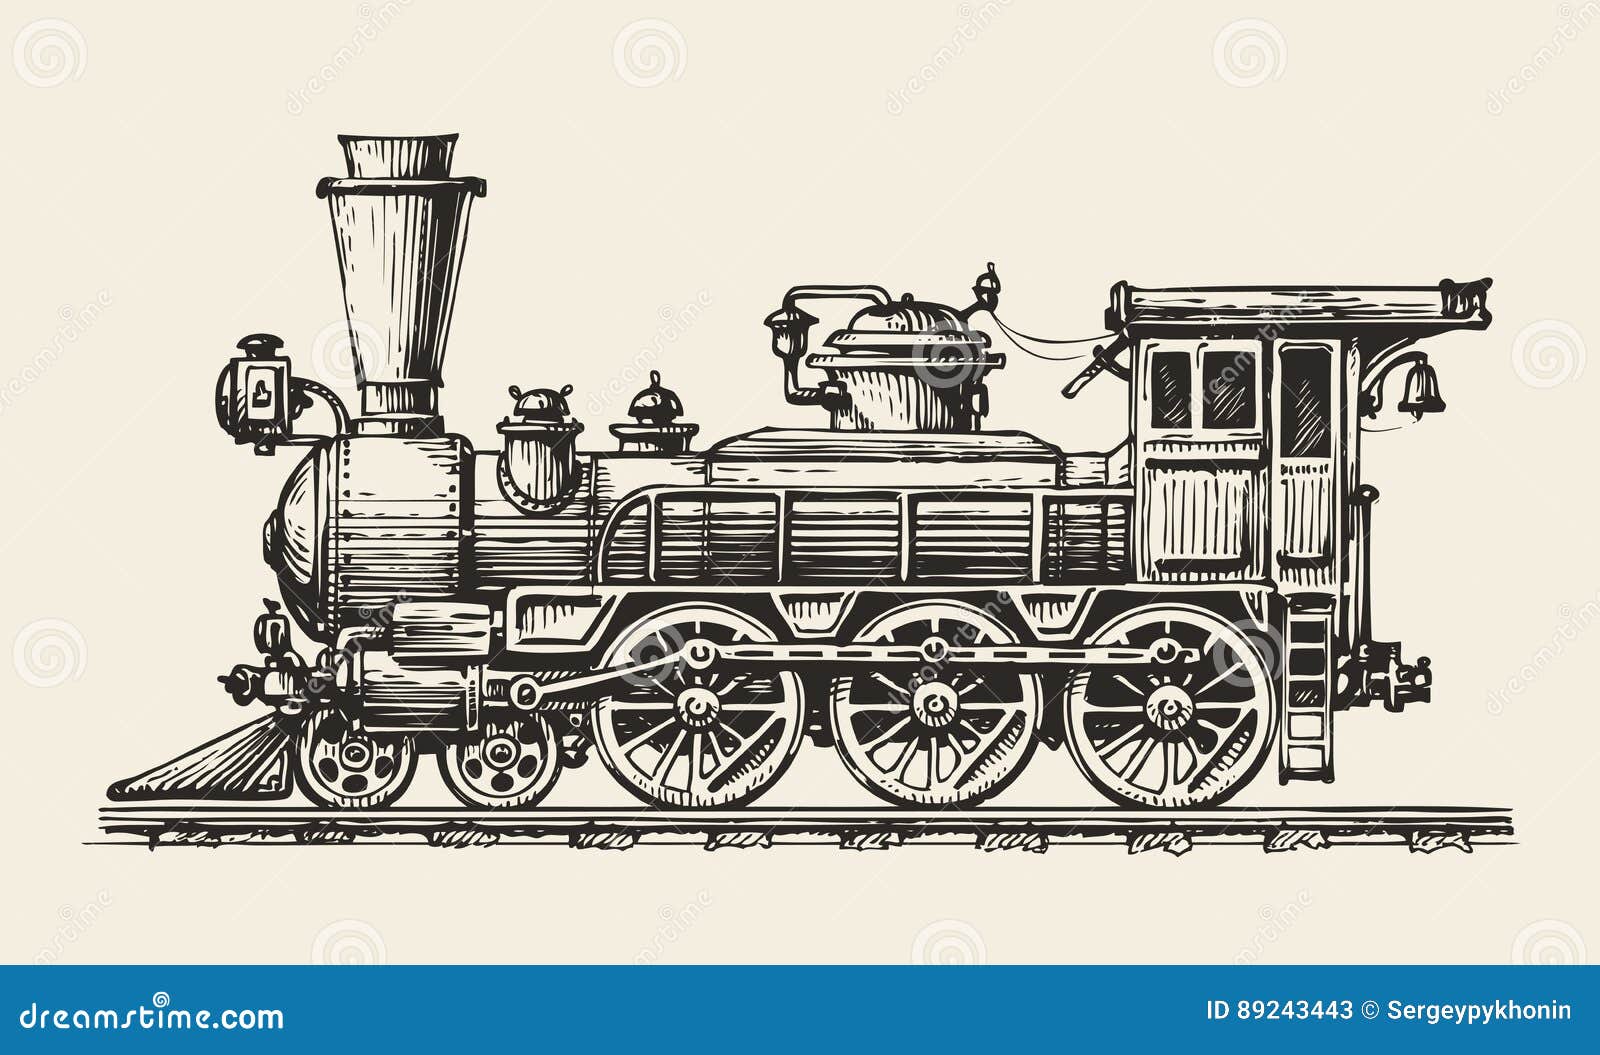 vintage locomotive. hand-drawn retro train. sketch,  